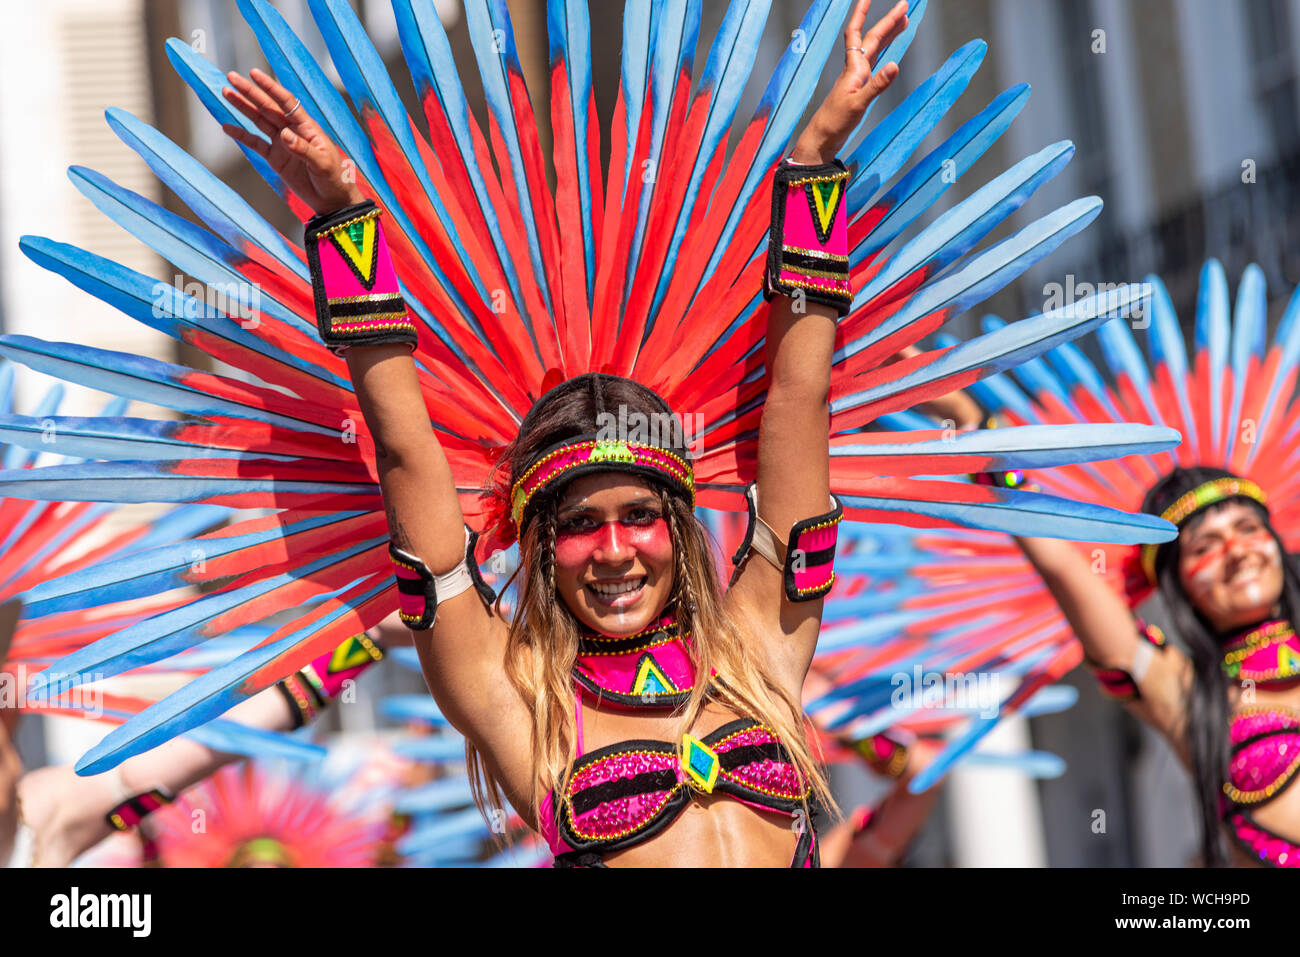 Femme en costume coloré à la jamaïcaine élaborée Notting Hill Carnival Parade finale sur un jour férié lundi. L'école de samba Paraiso Banque D'Images